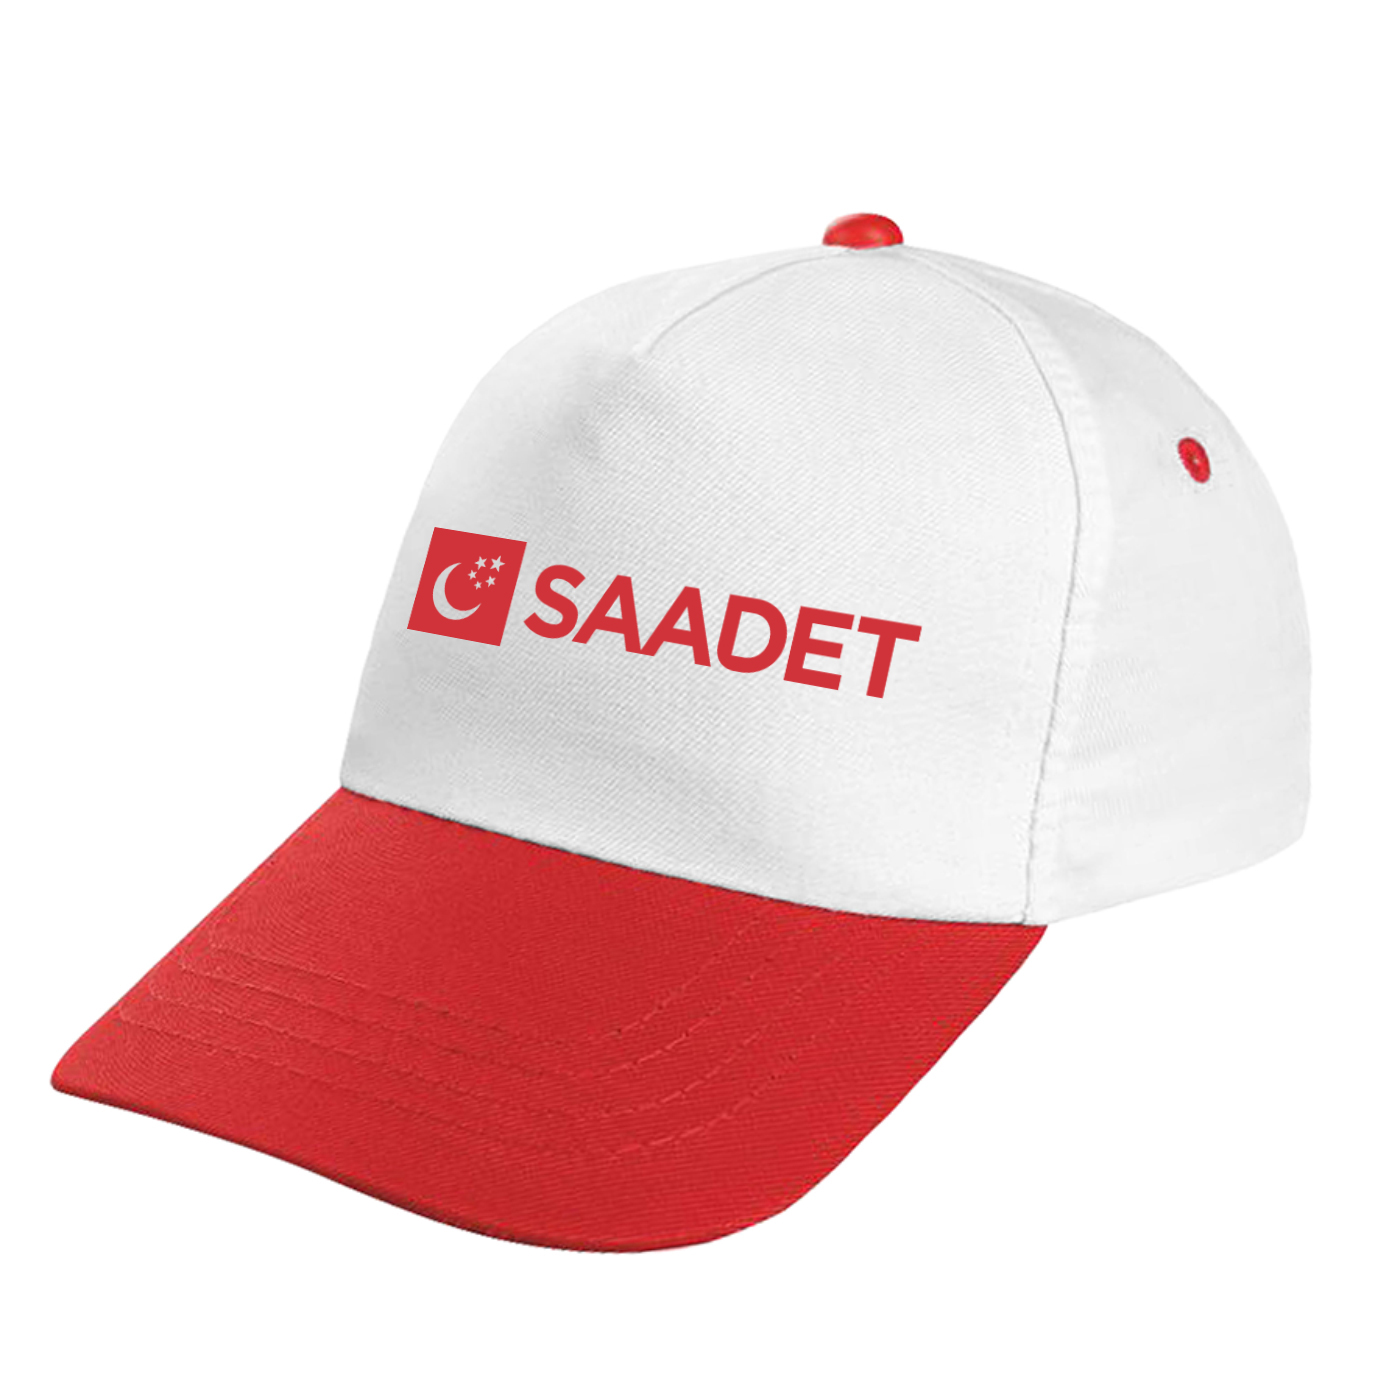 Saadet Partisi Logo Baskılı Şapka